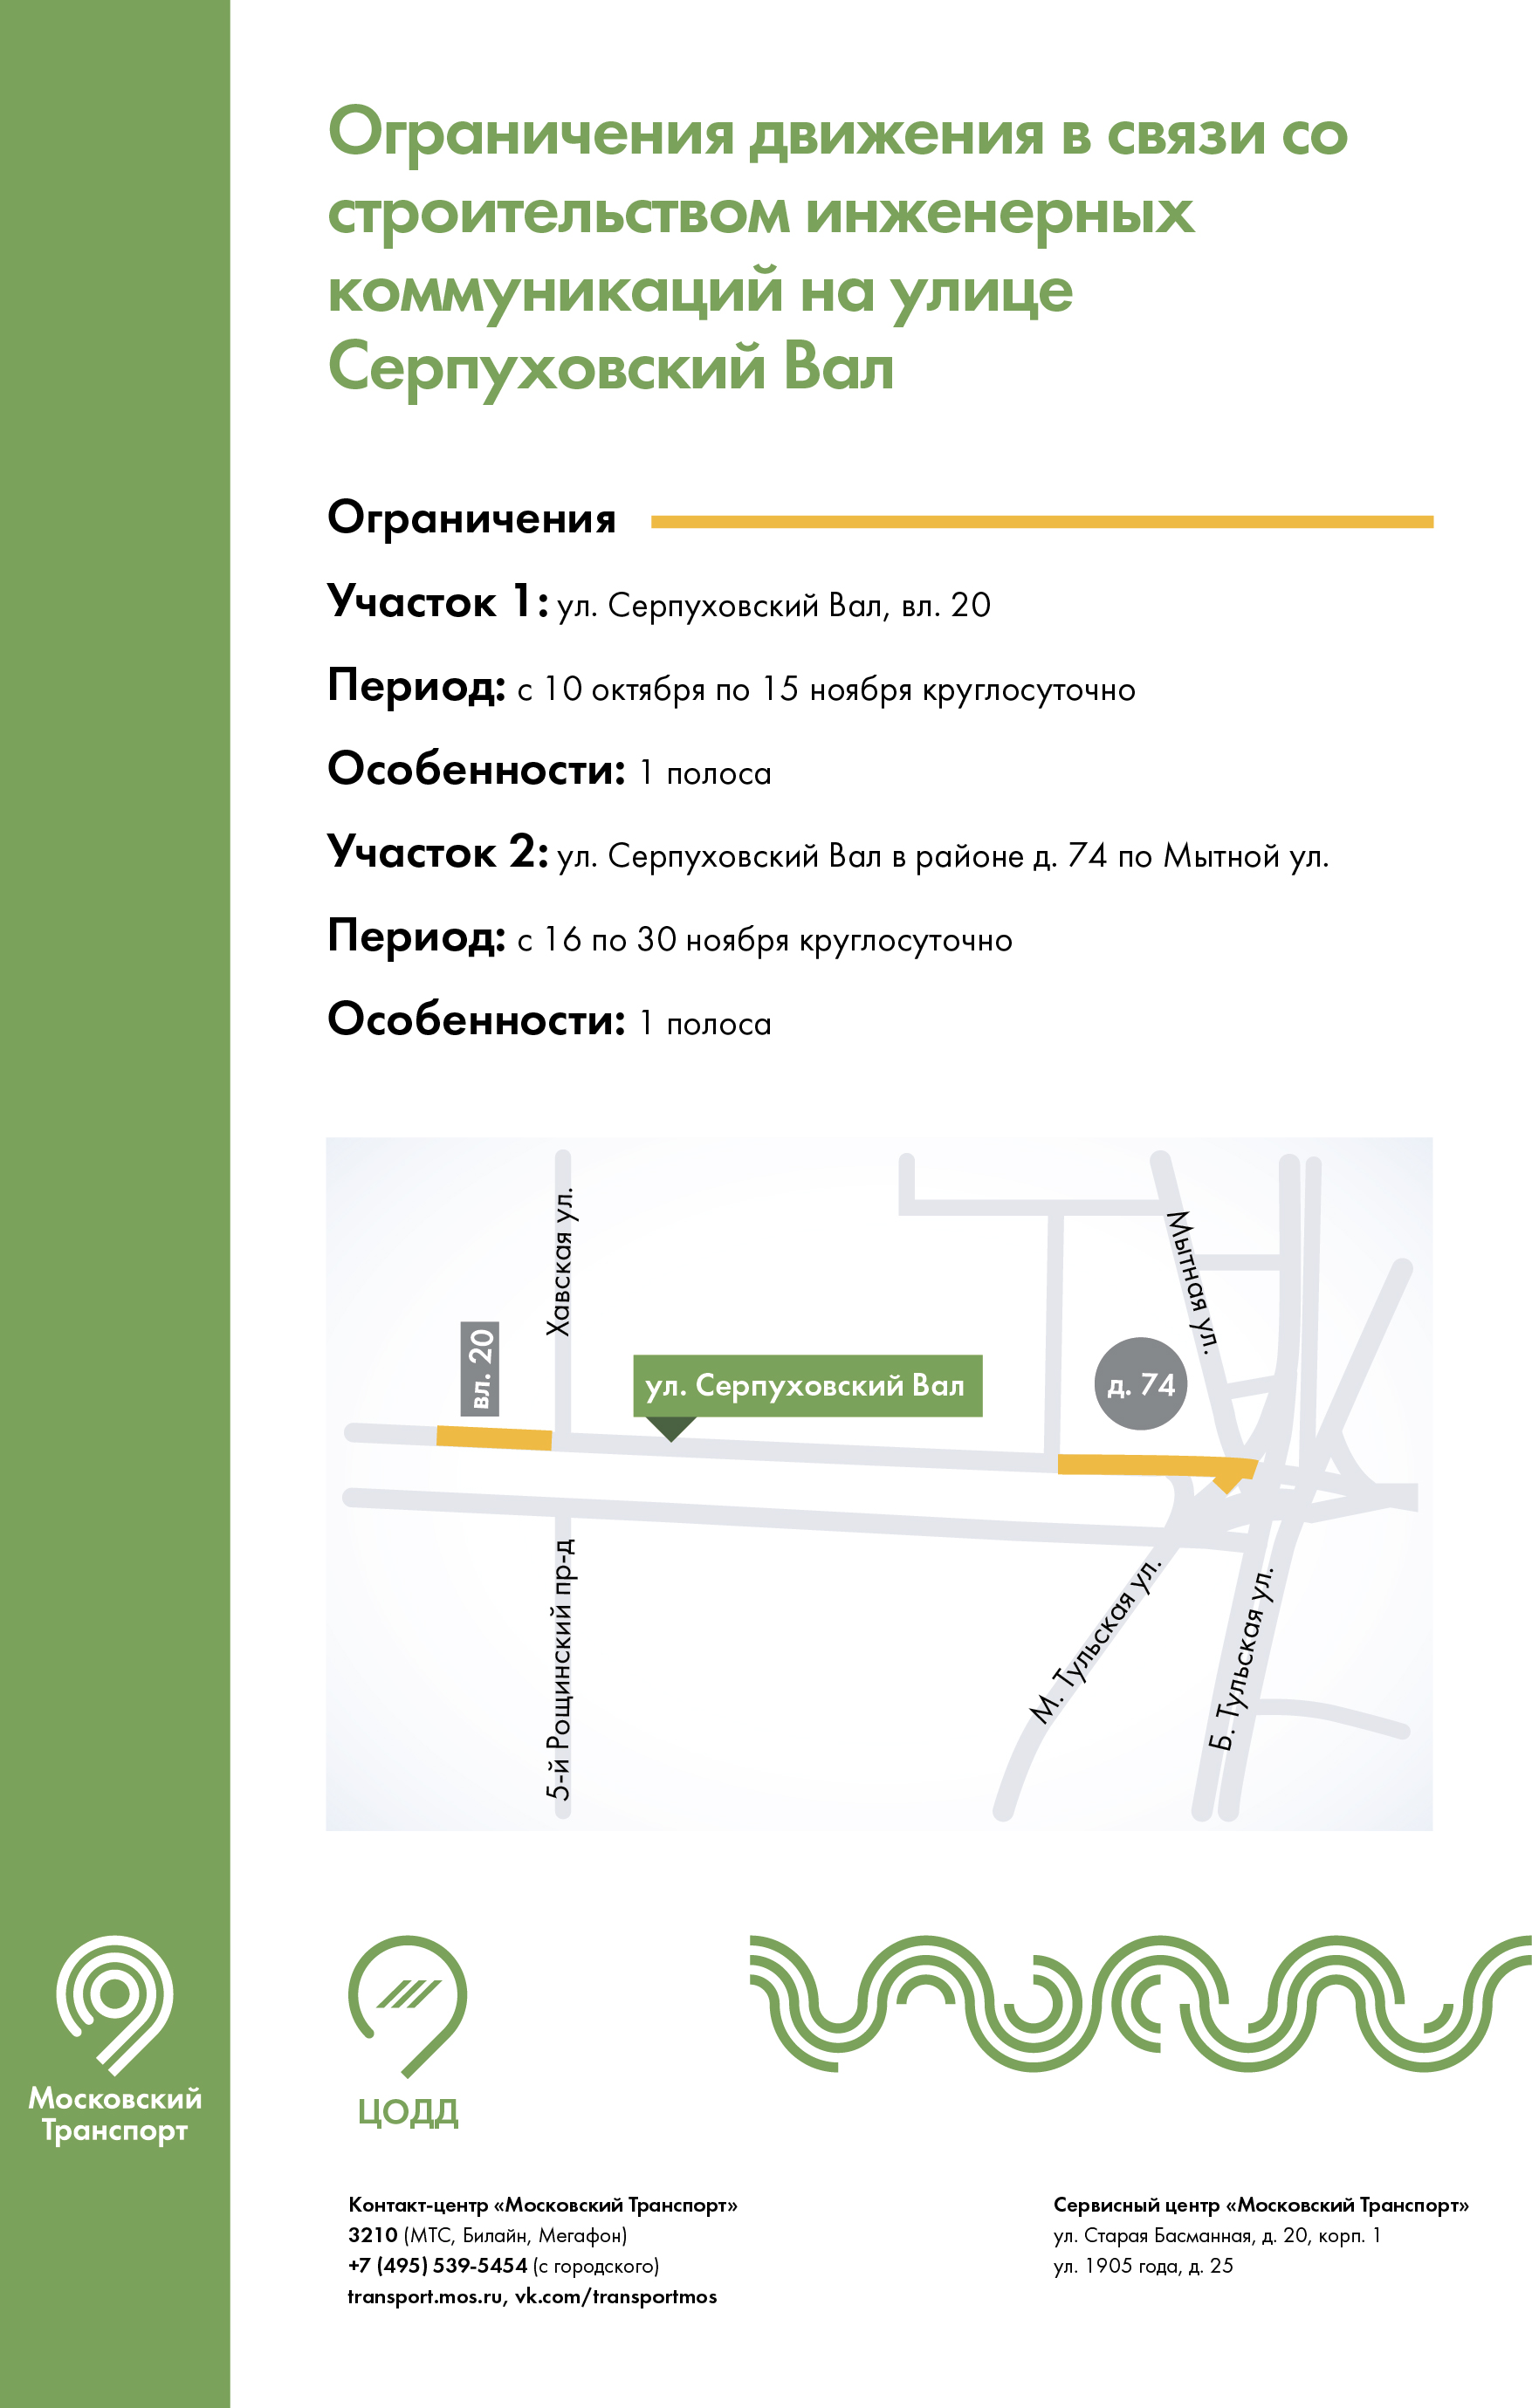 С 10 октября на участке улицы Серпуховский Вал ограничат движение